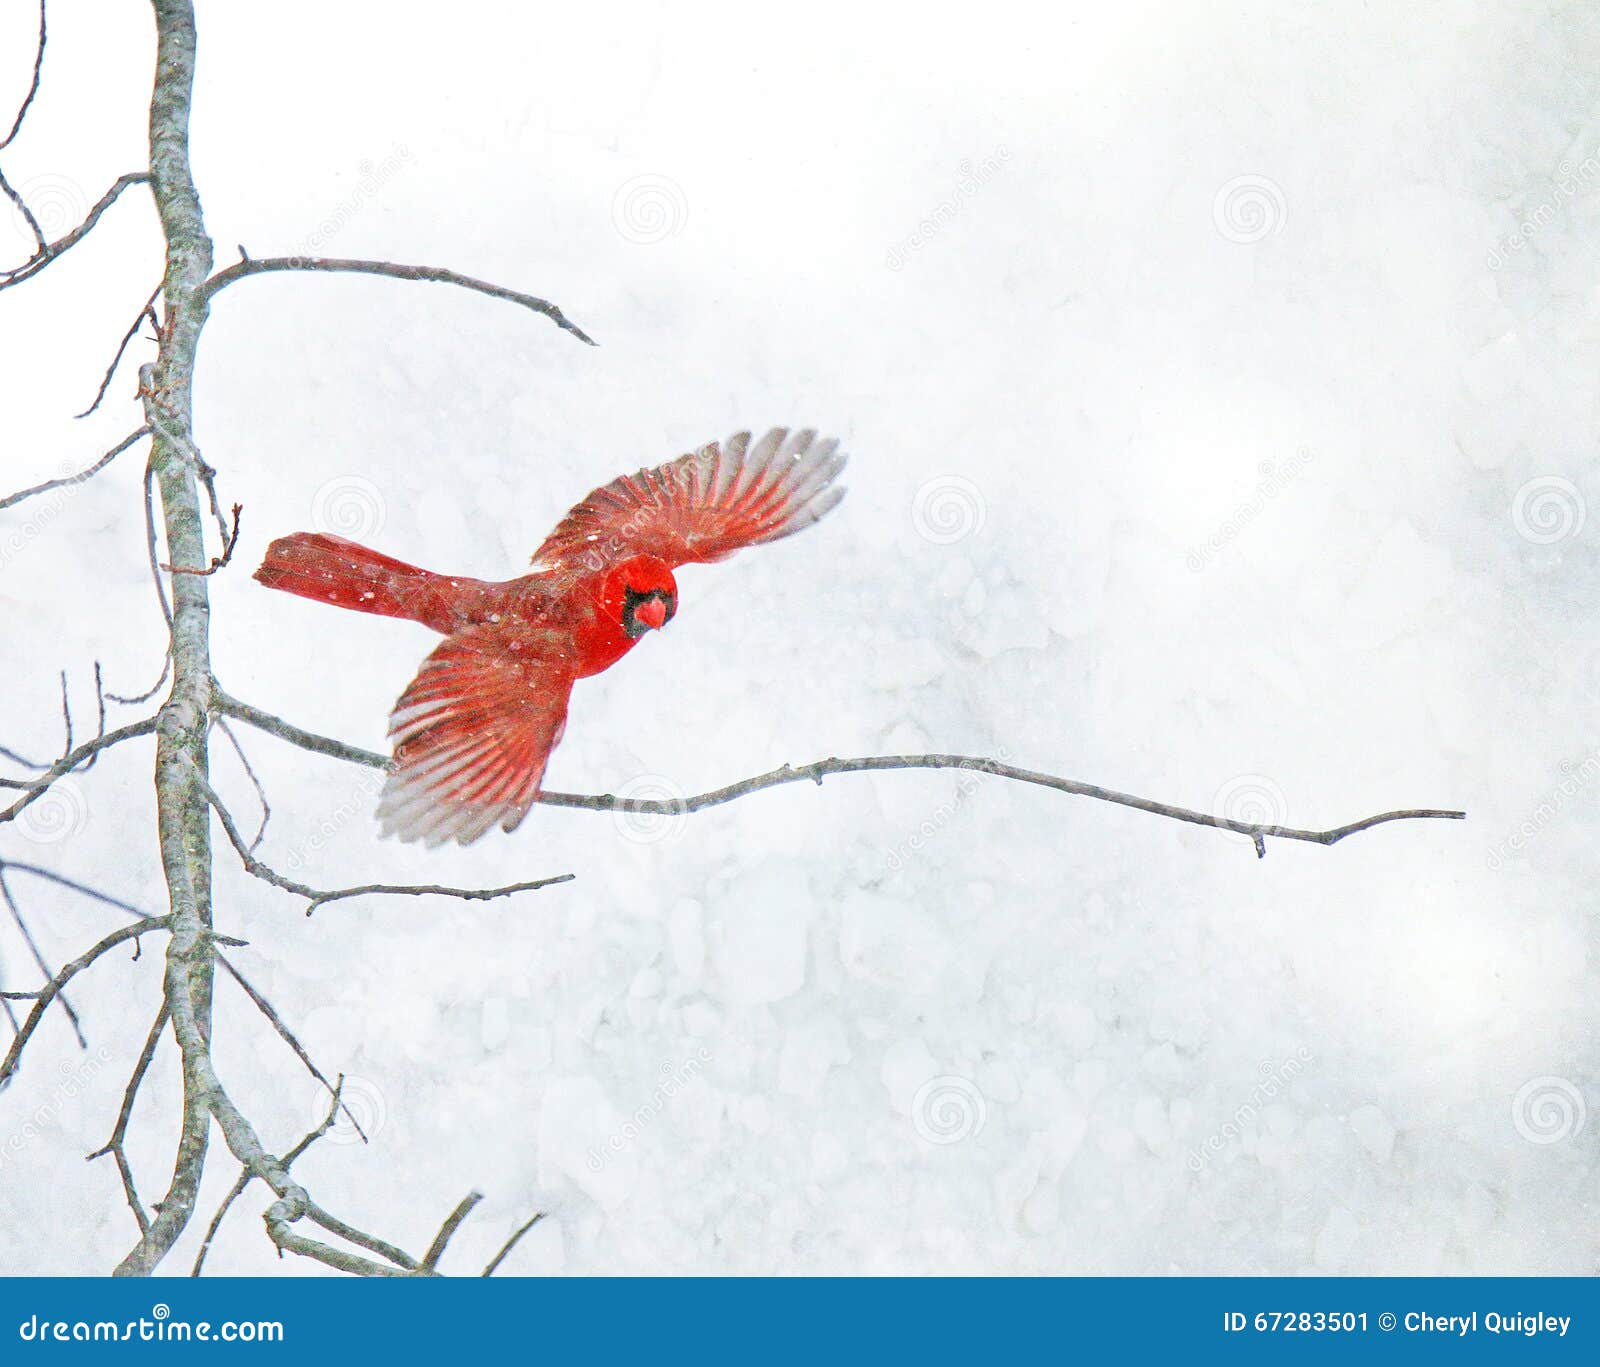 Rood HoofdFlying in de Sneeuw. Een rode Kardinaal vliegt van een naakte boomtak in een sneeuwstorm